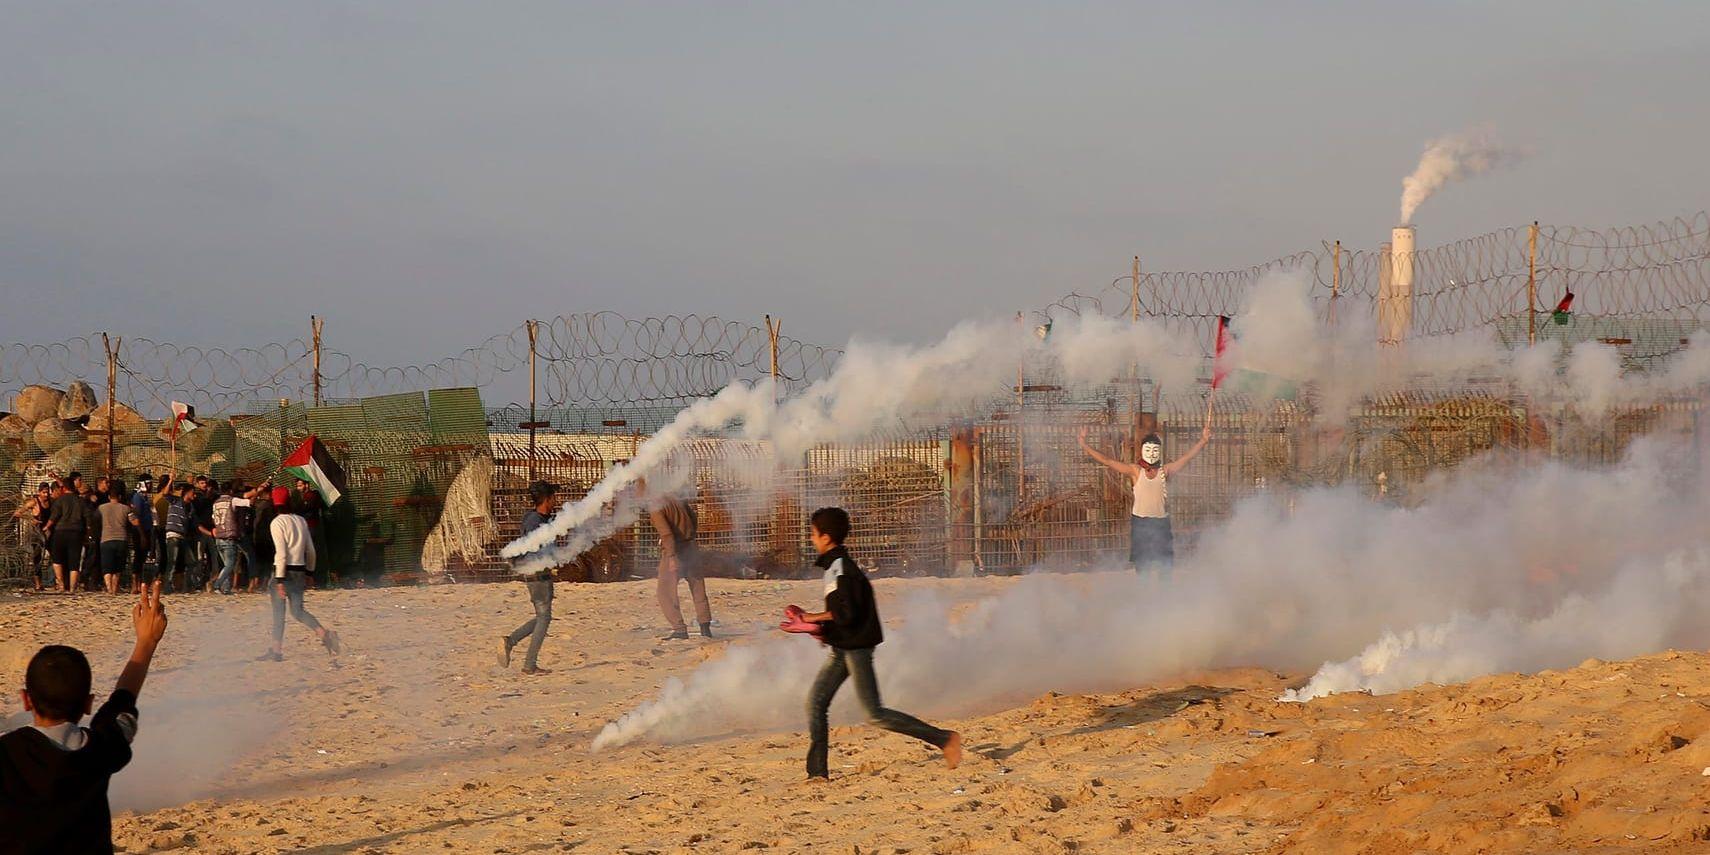 Demonstranter flyr undan tårgas vid en demonstration vid gränsstängslet mellan Israel och Gaza. Arkivbild.